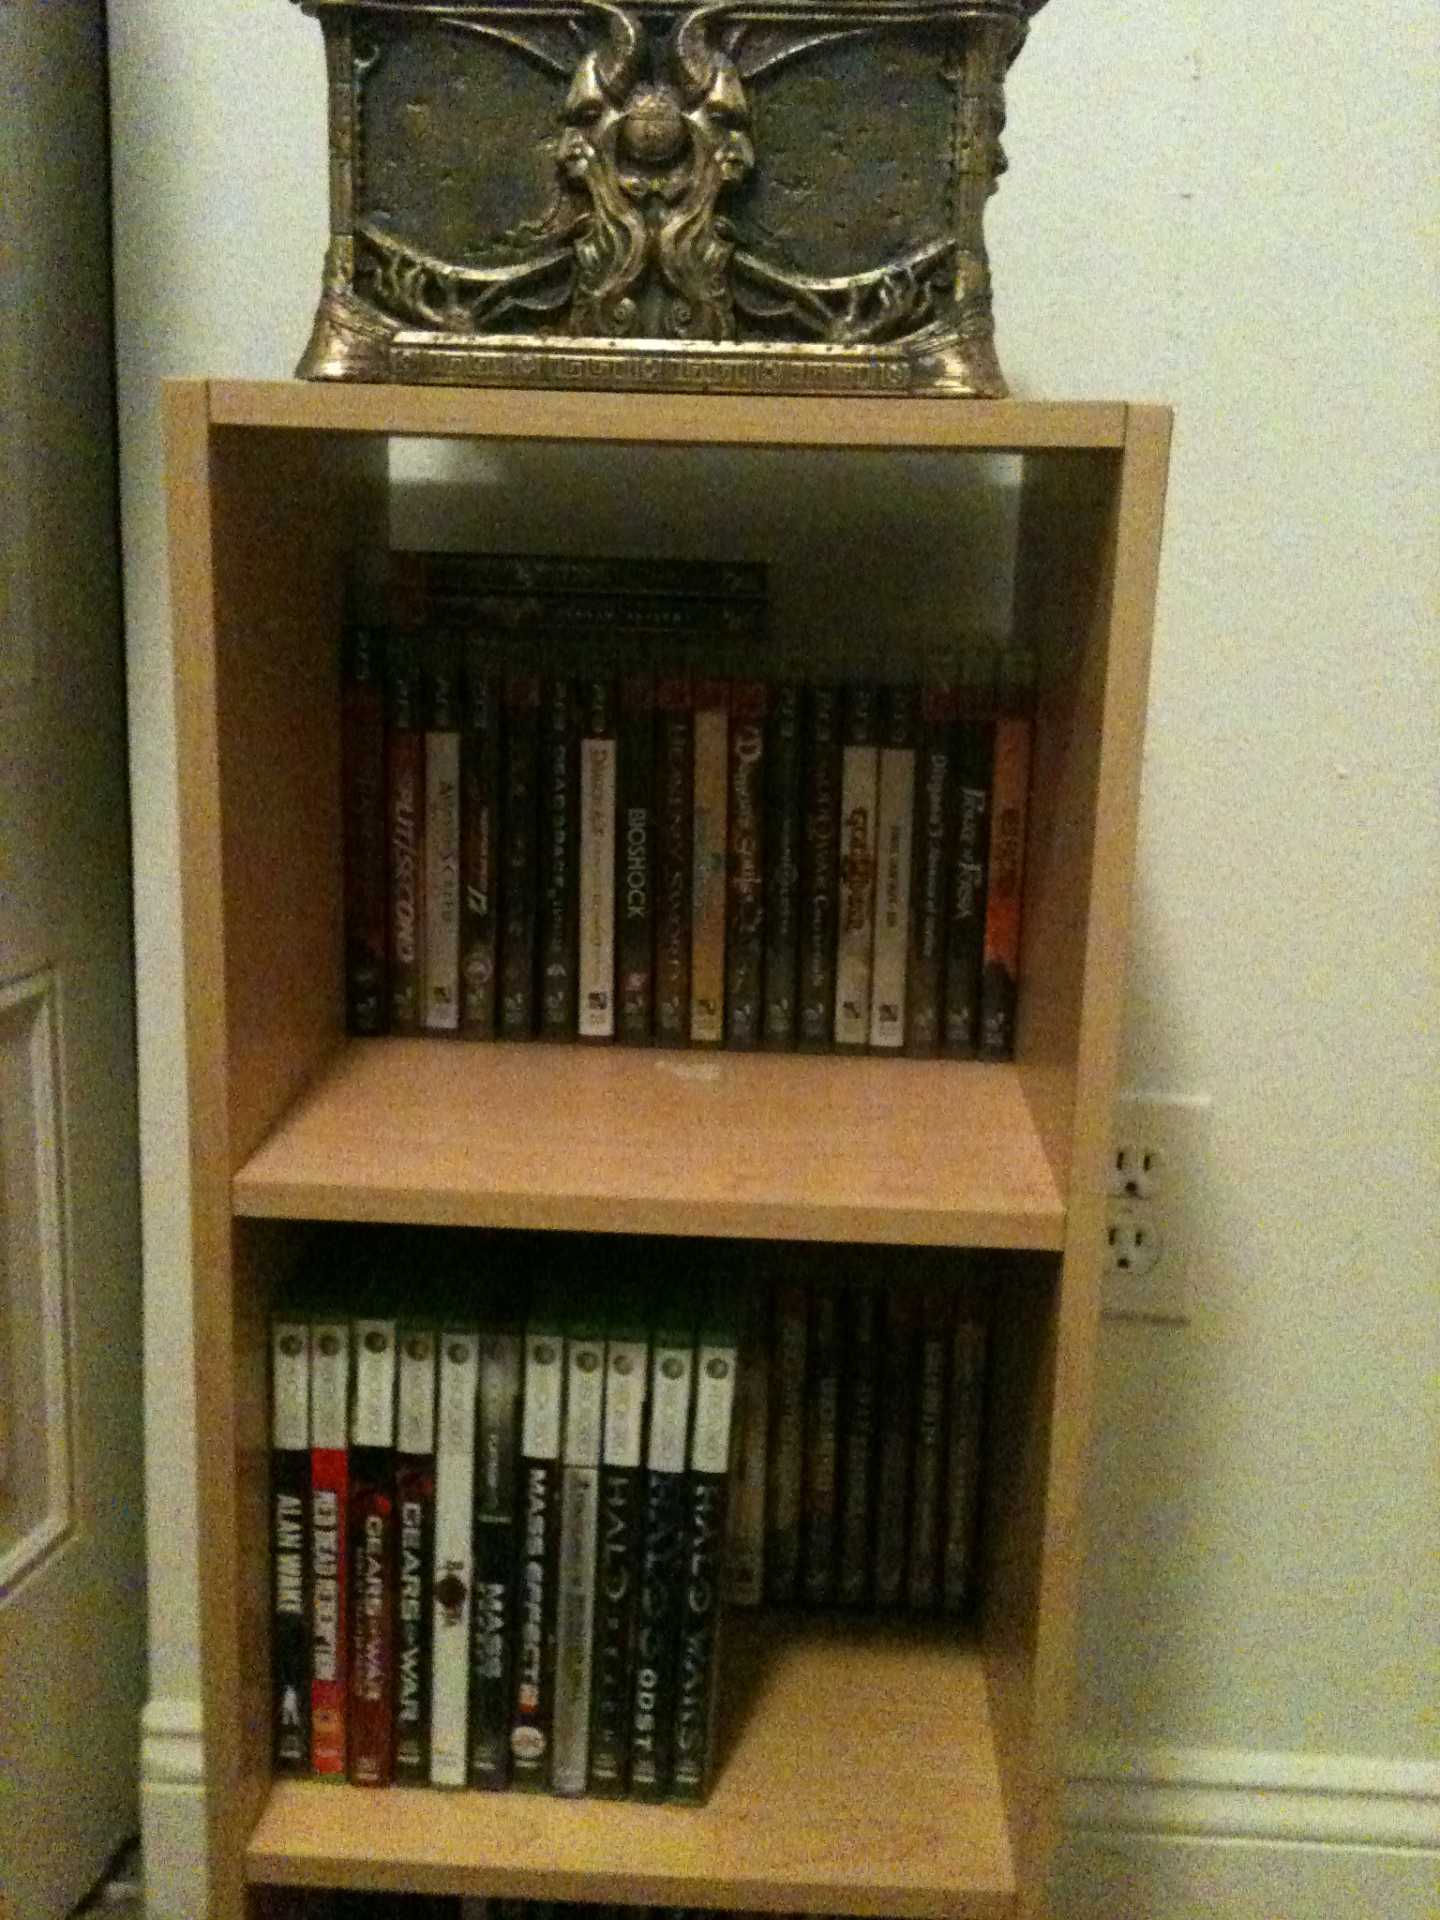 Man, I really need a new shelf... 